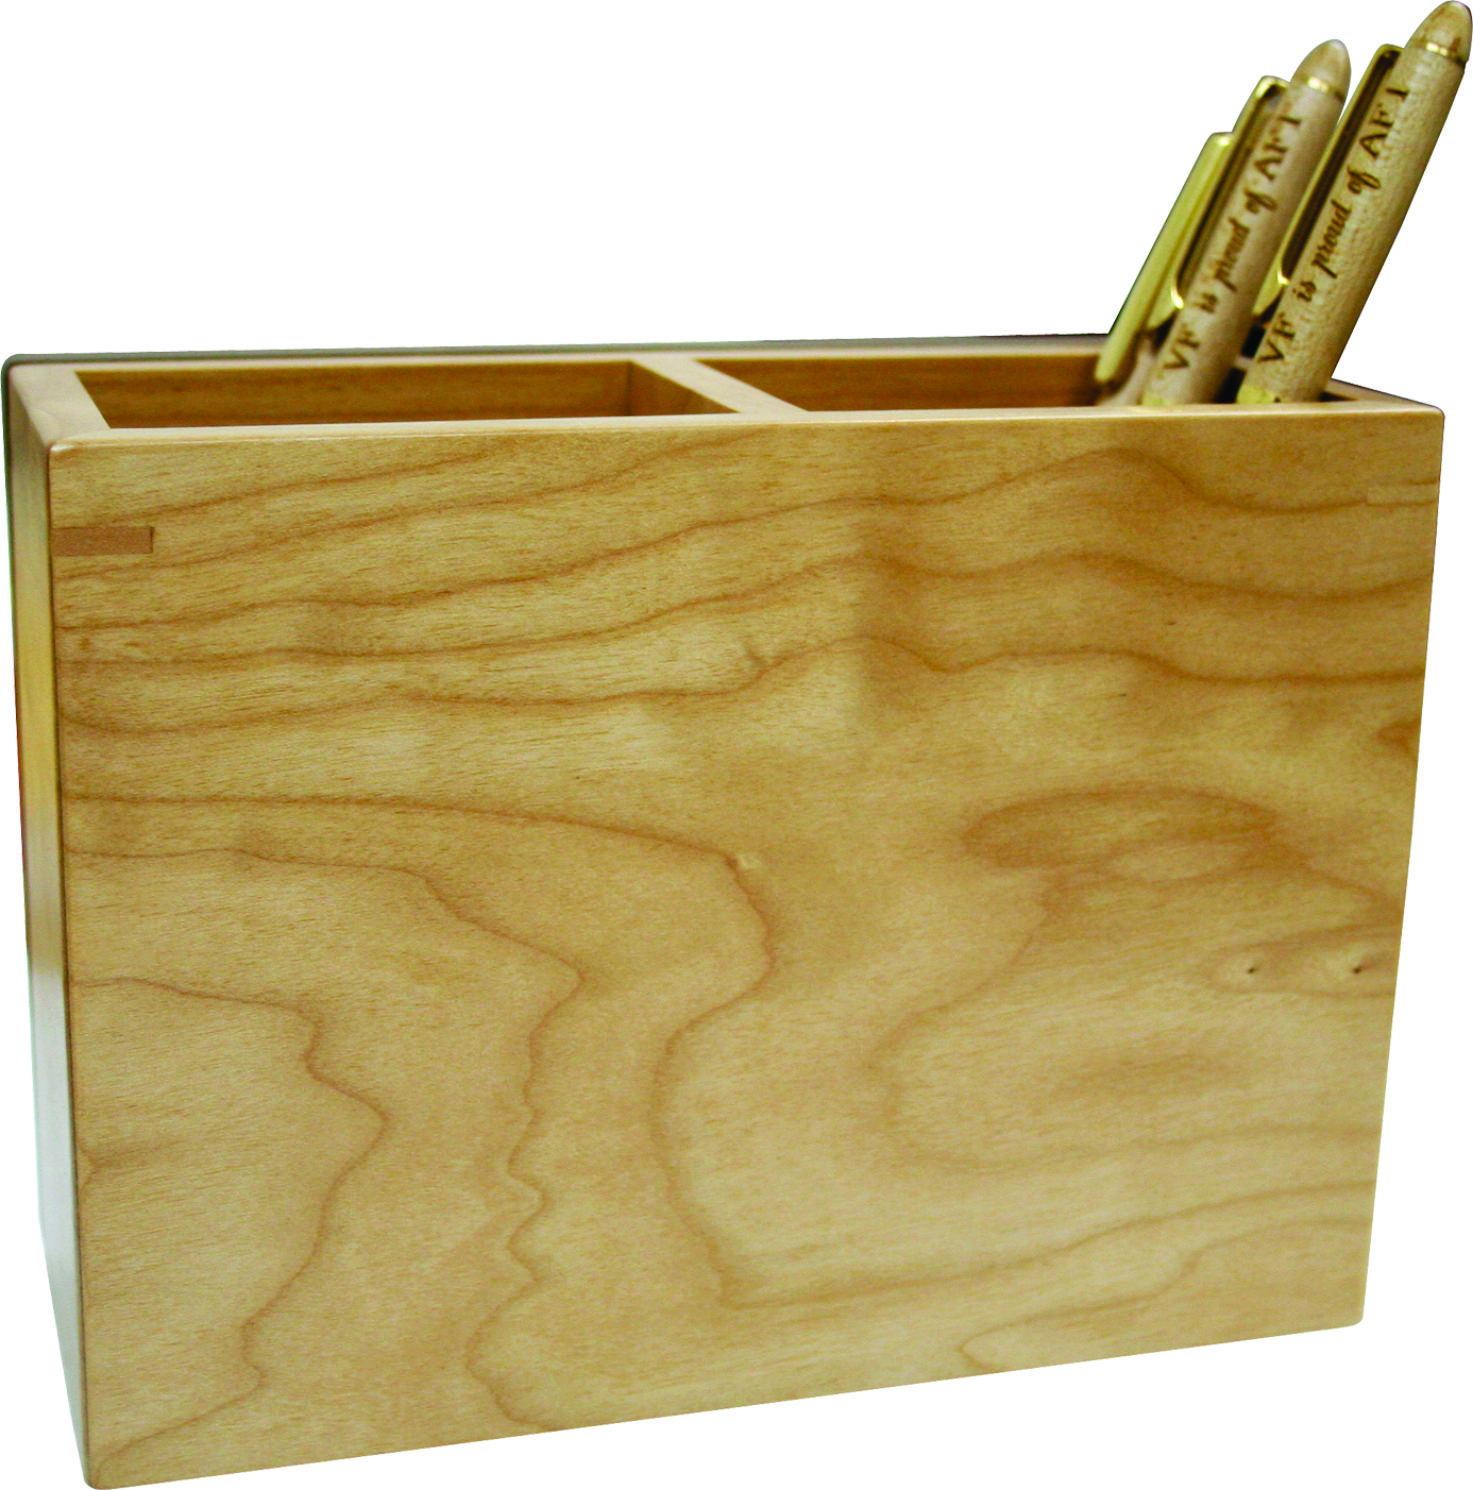 Ống bút gỗ 2 trong 1 - 70515